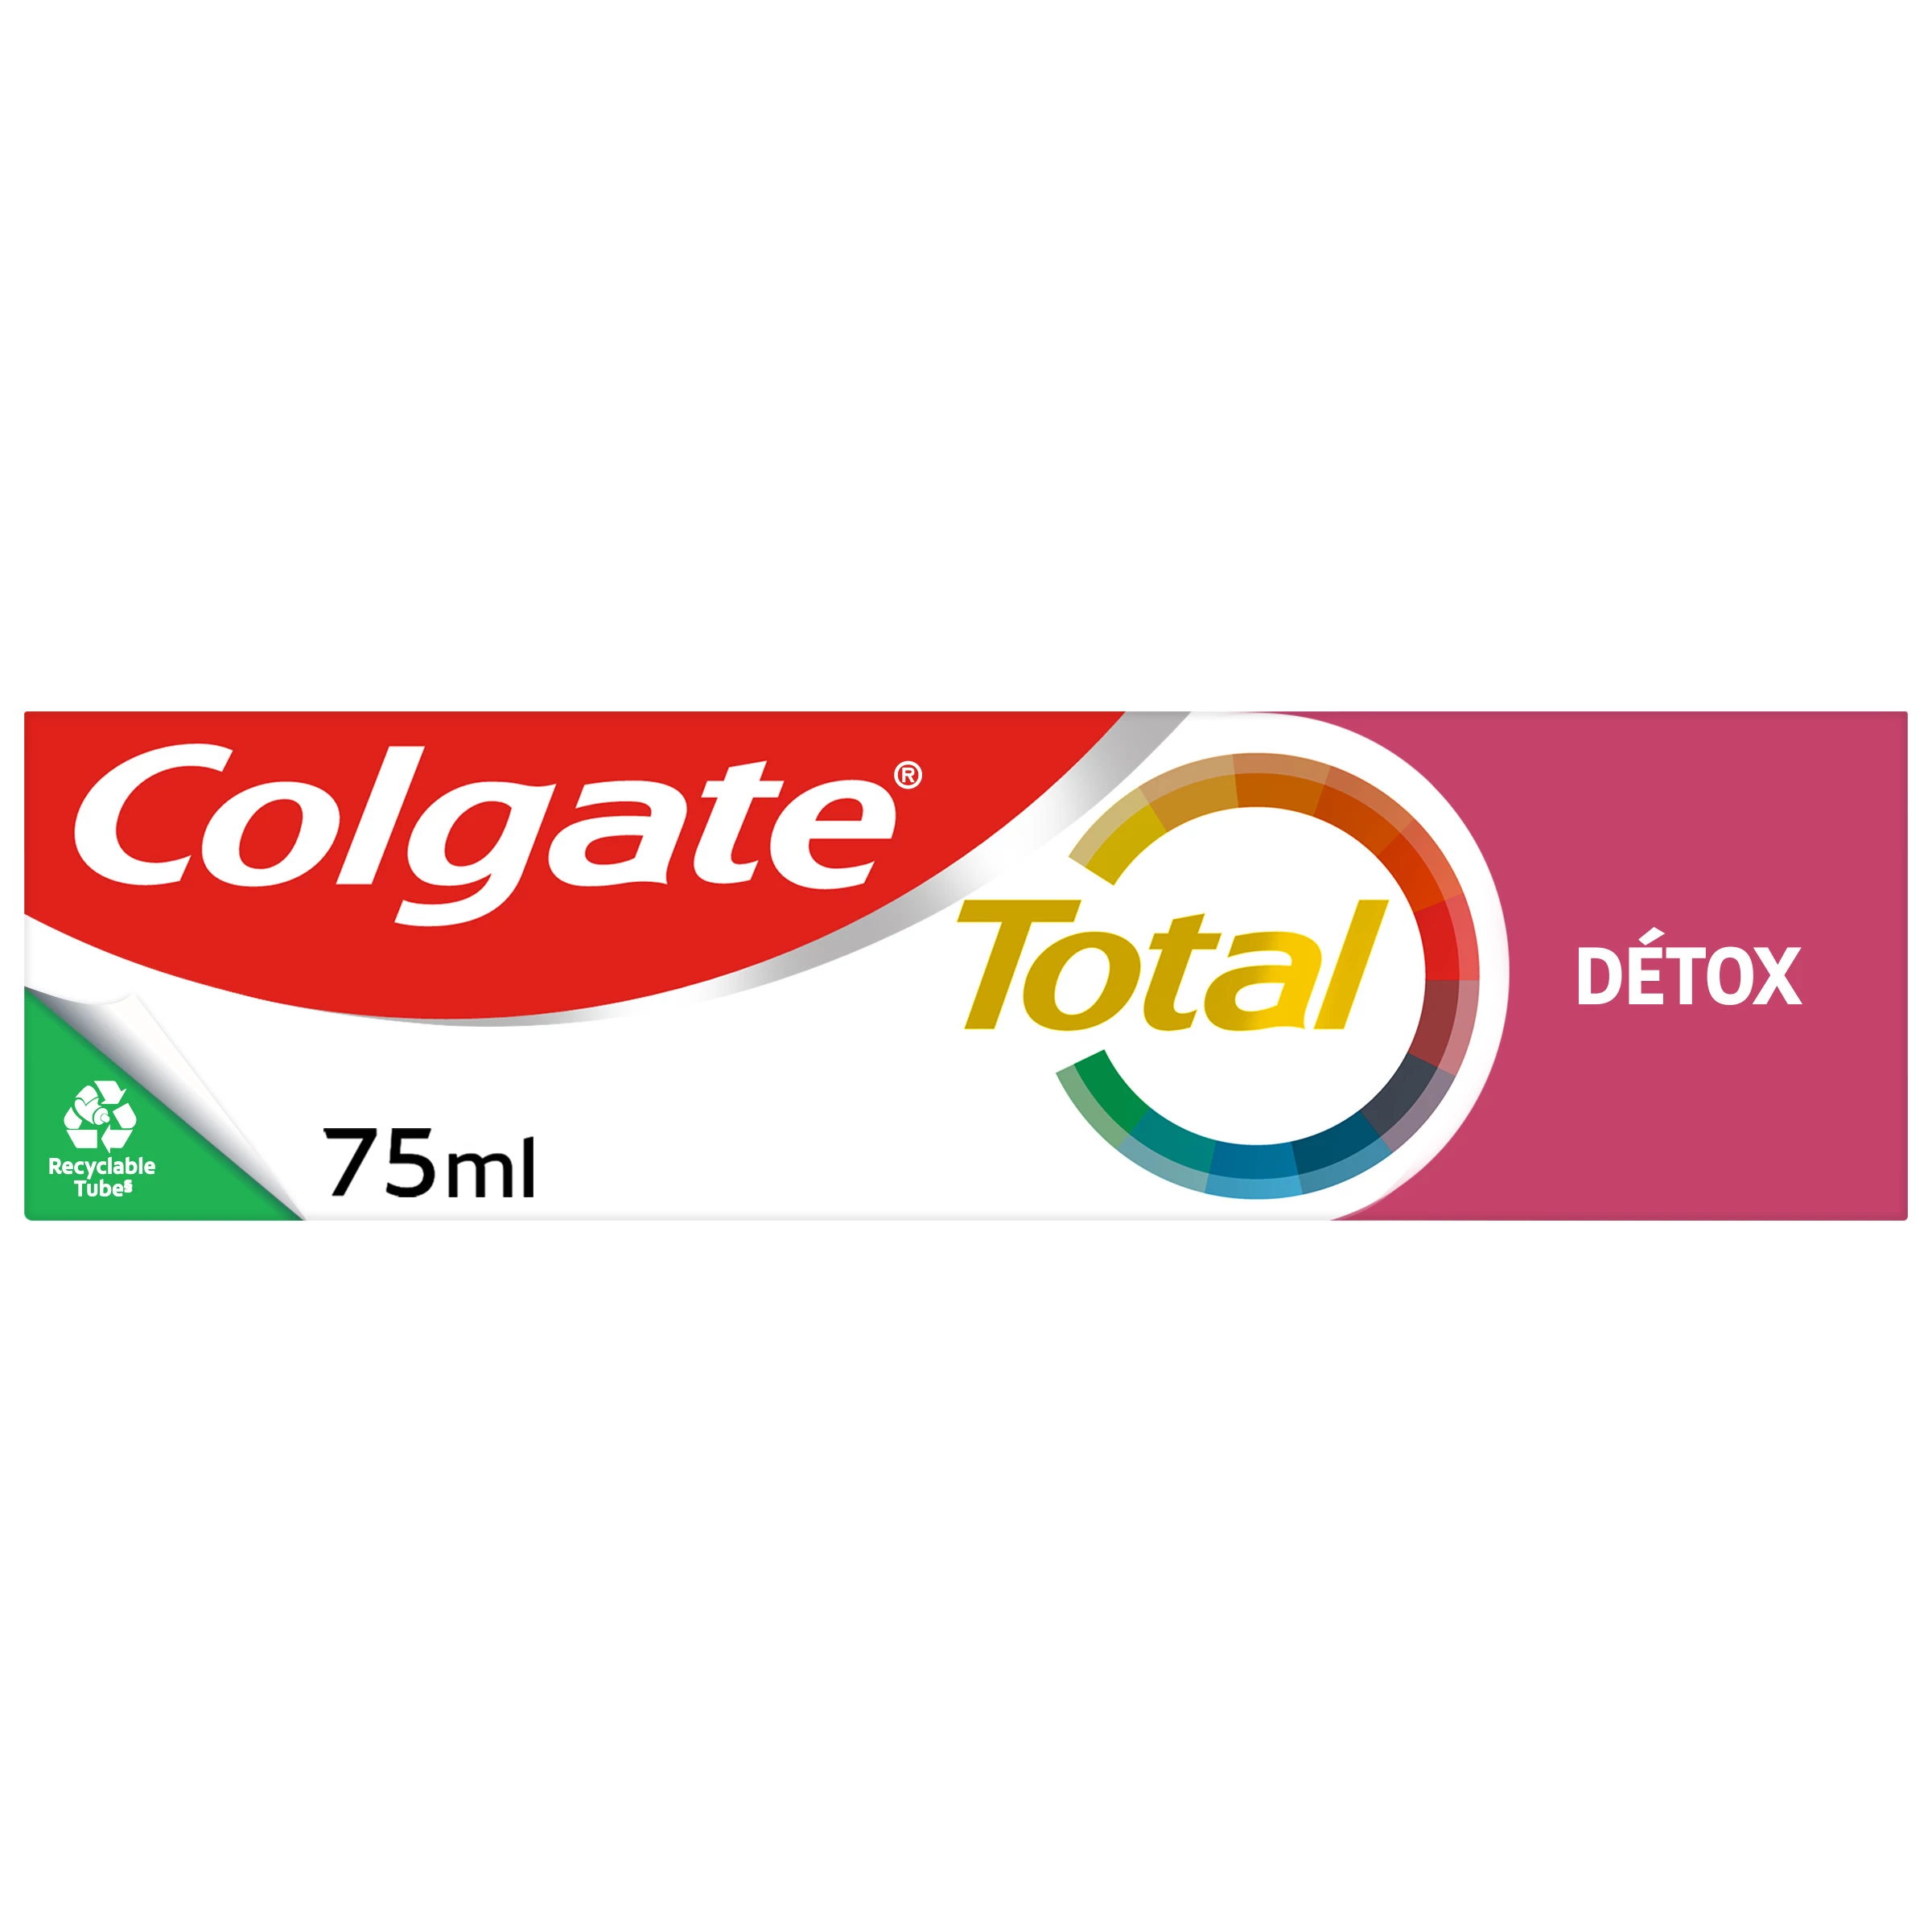 Col24hdefense Detox 75ml